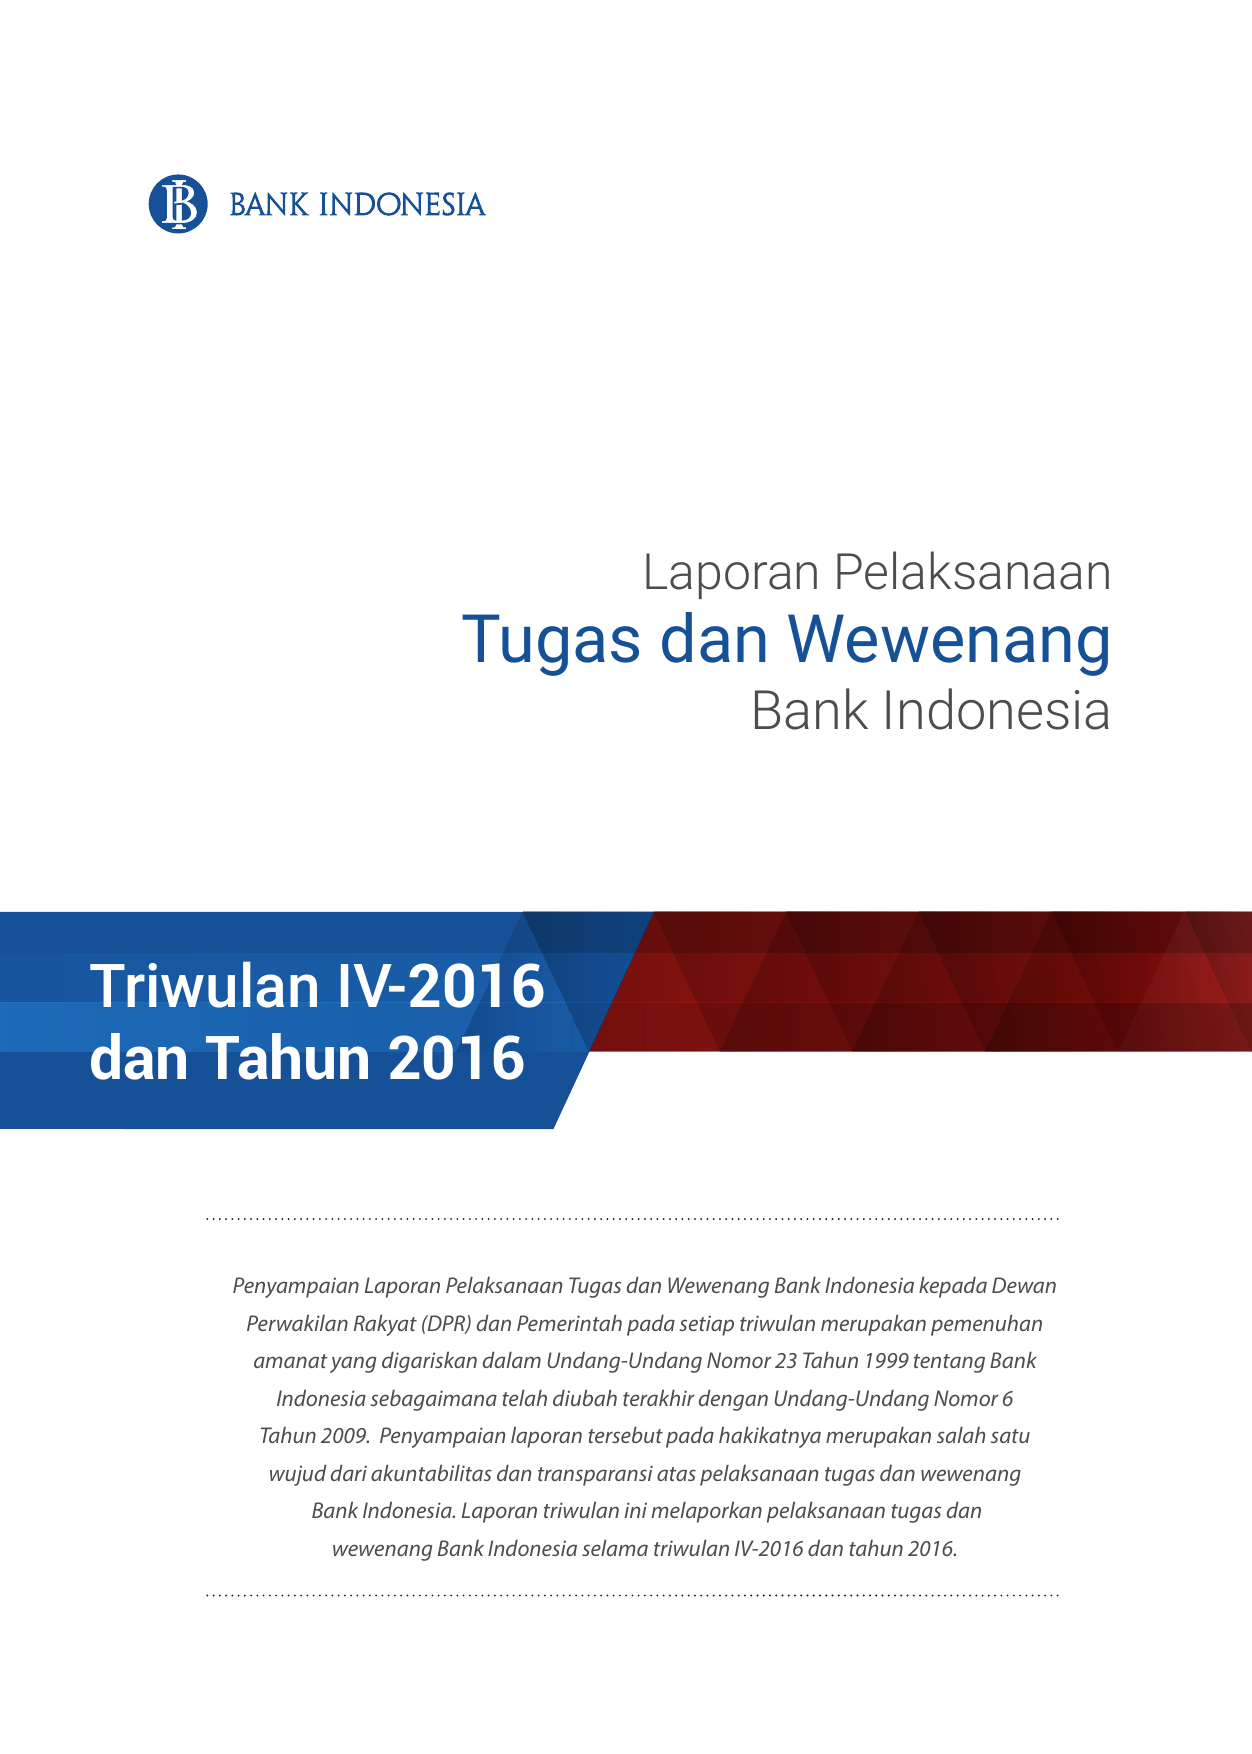 Laporan Pelaksanaan Tugas dan Wewenang Bank Indonesia Triwulan IV 2016 dan Tahun 2016 Penyampaian Laporan Pelaksanaan Tugas dan Wewenang Bank Indonesia